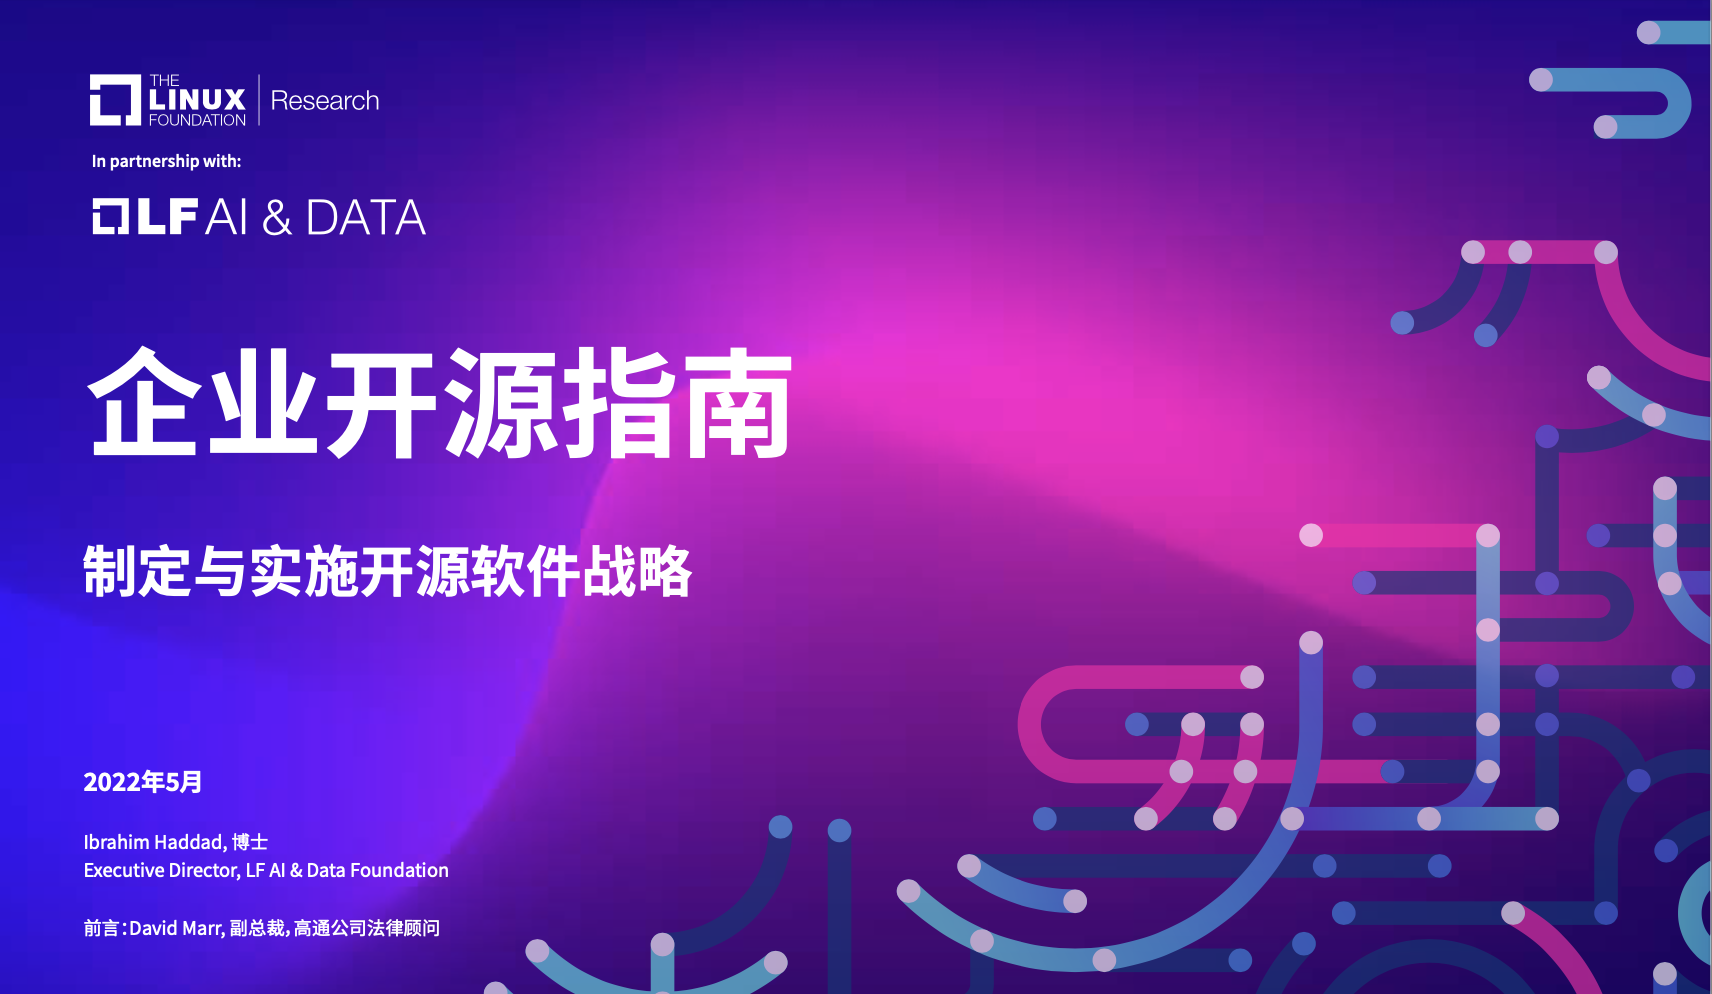 企业开源指南官方中文版出炉了！